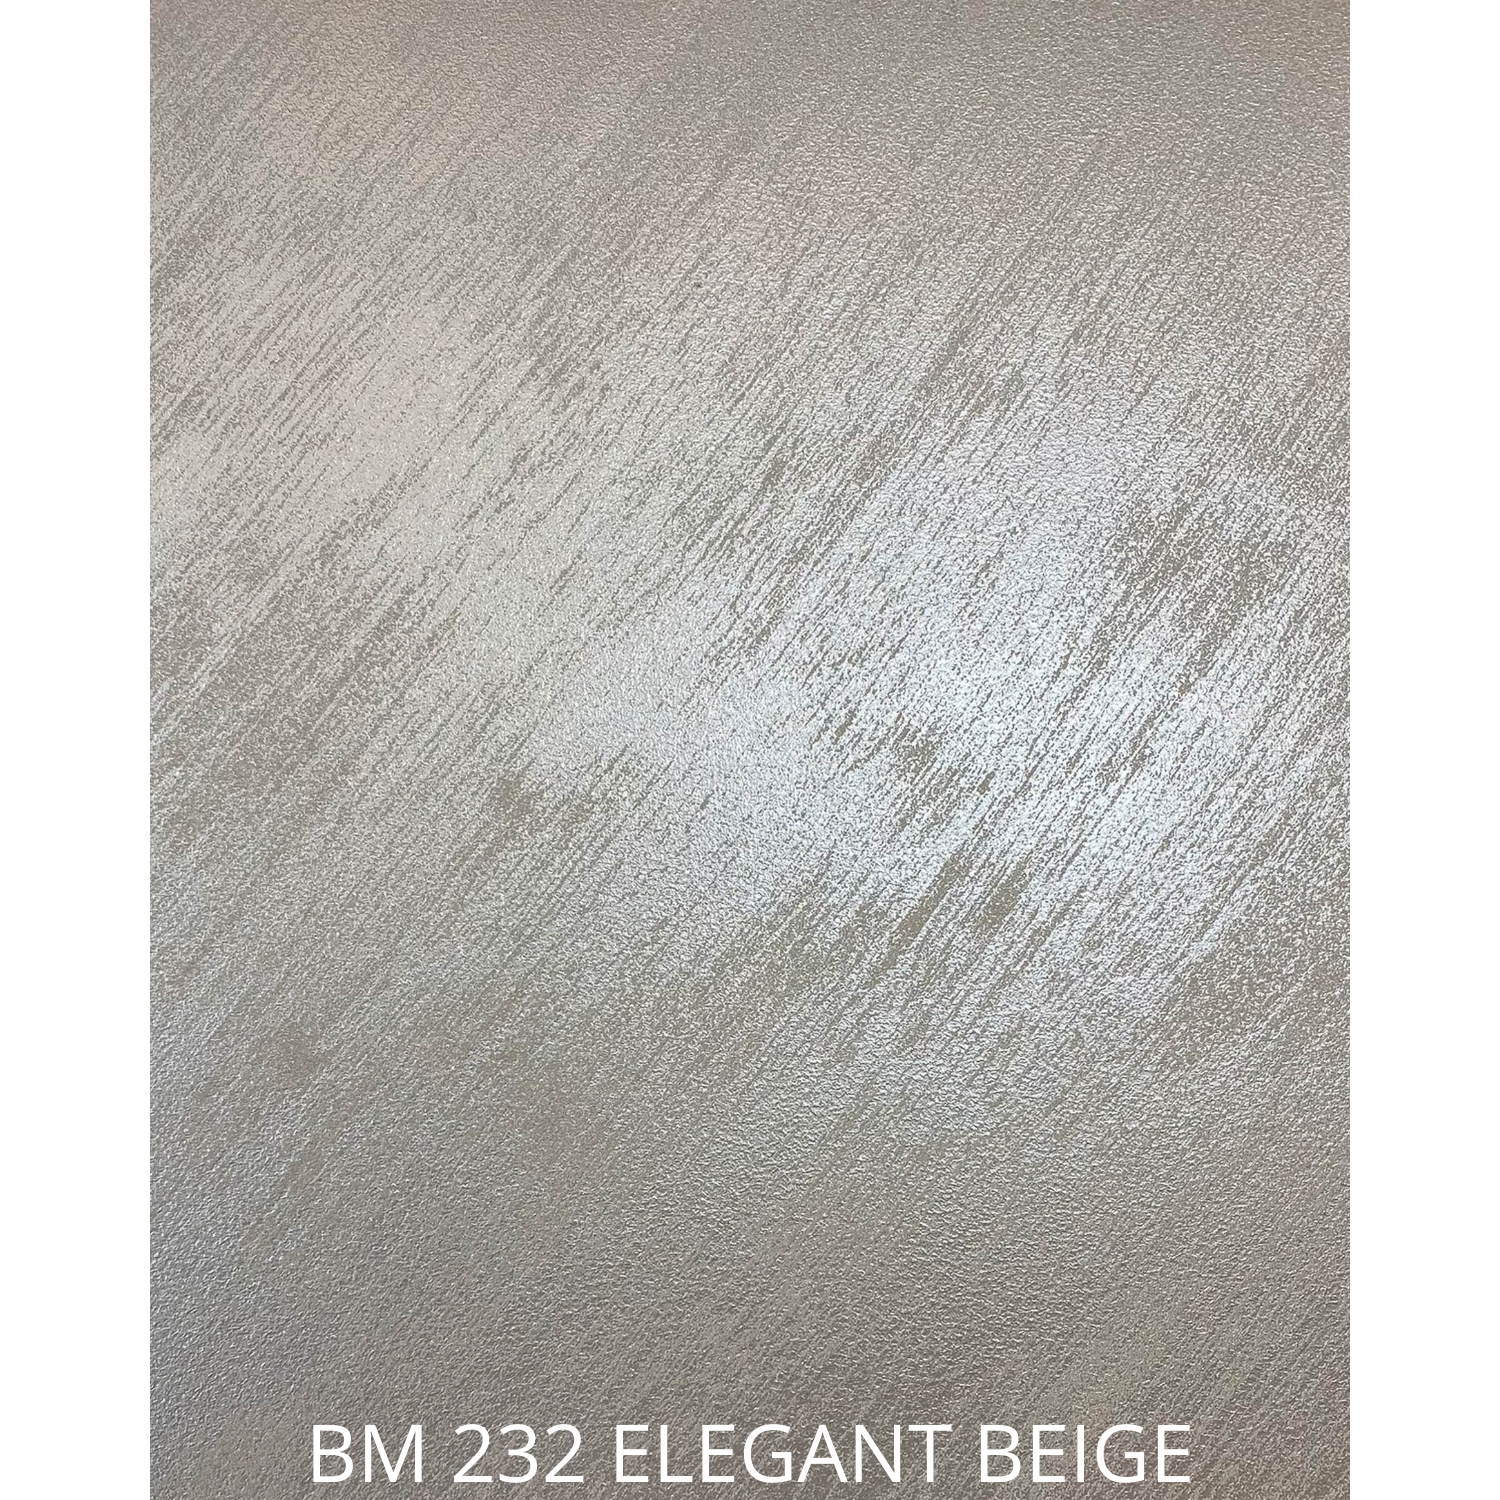 BM 232 ELEGANT BEIGE